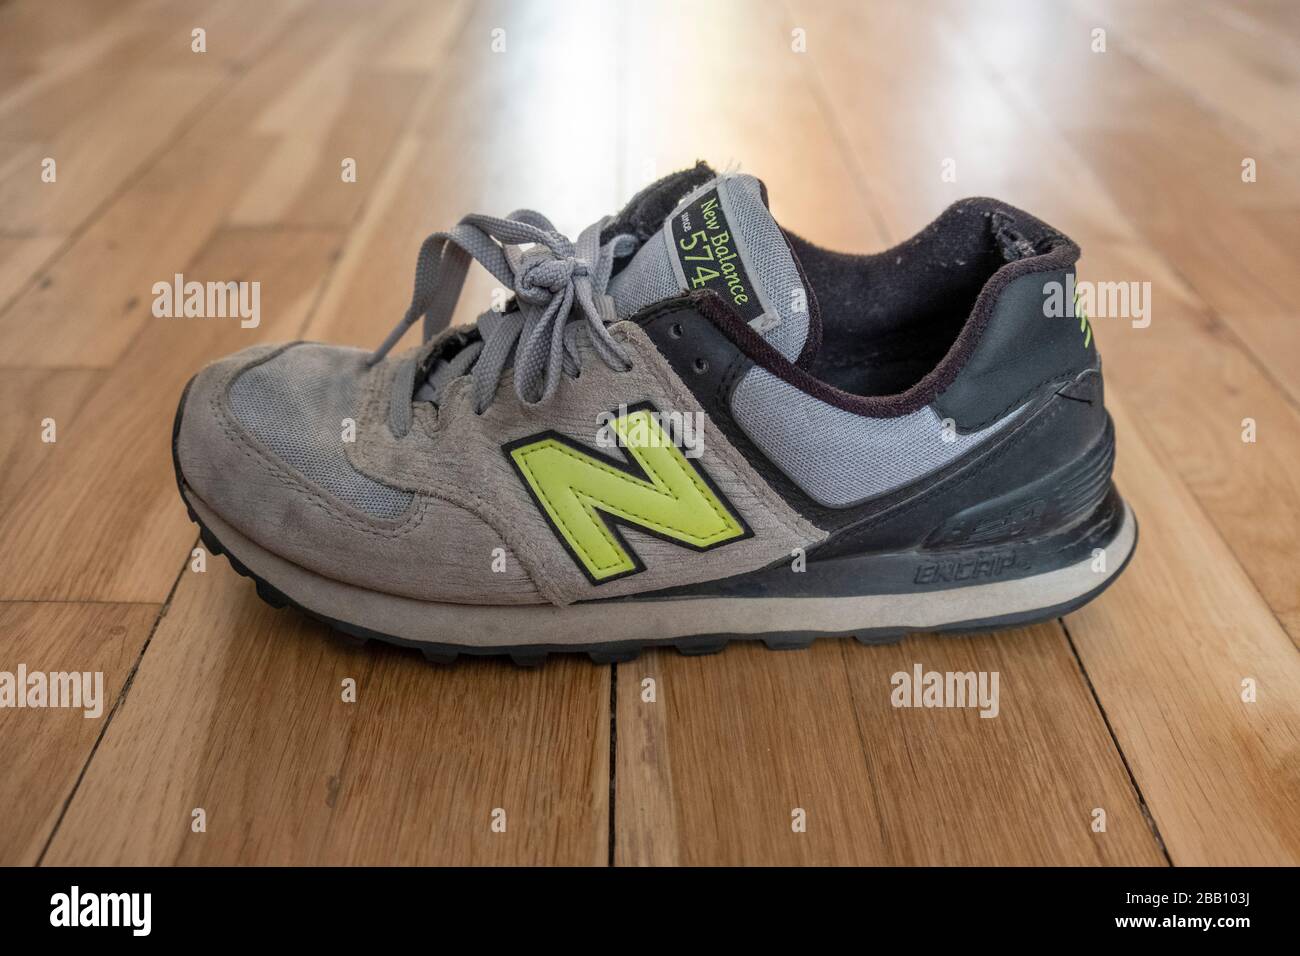 Nuova scarpa da training Balance 574 su pavimento in legno duro Foto Stock